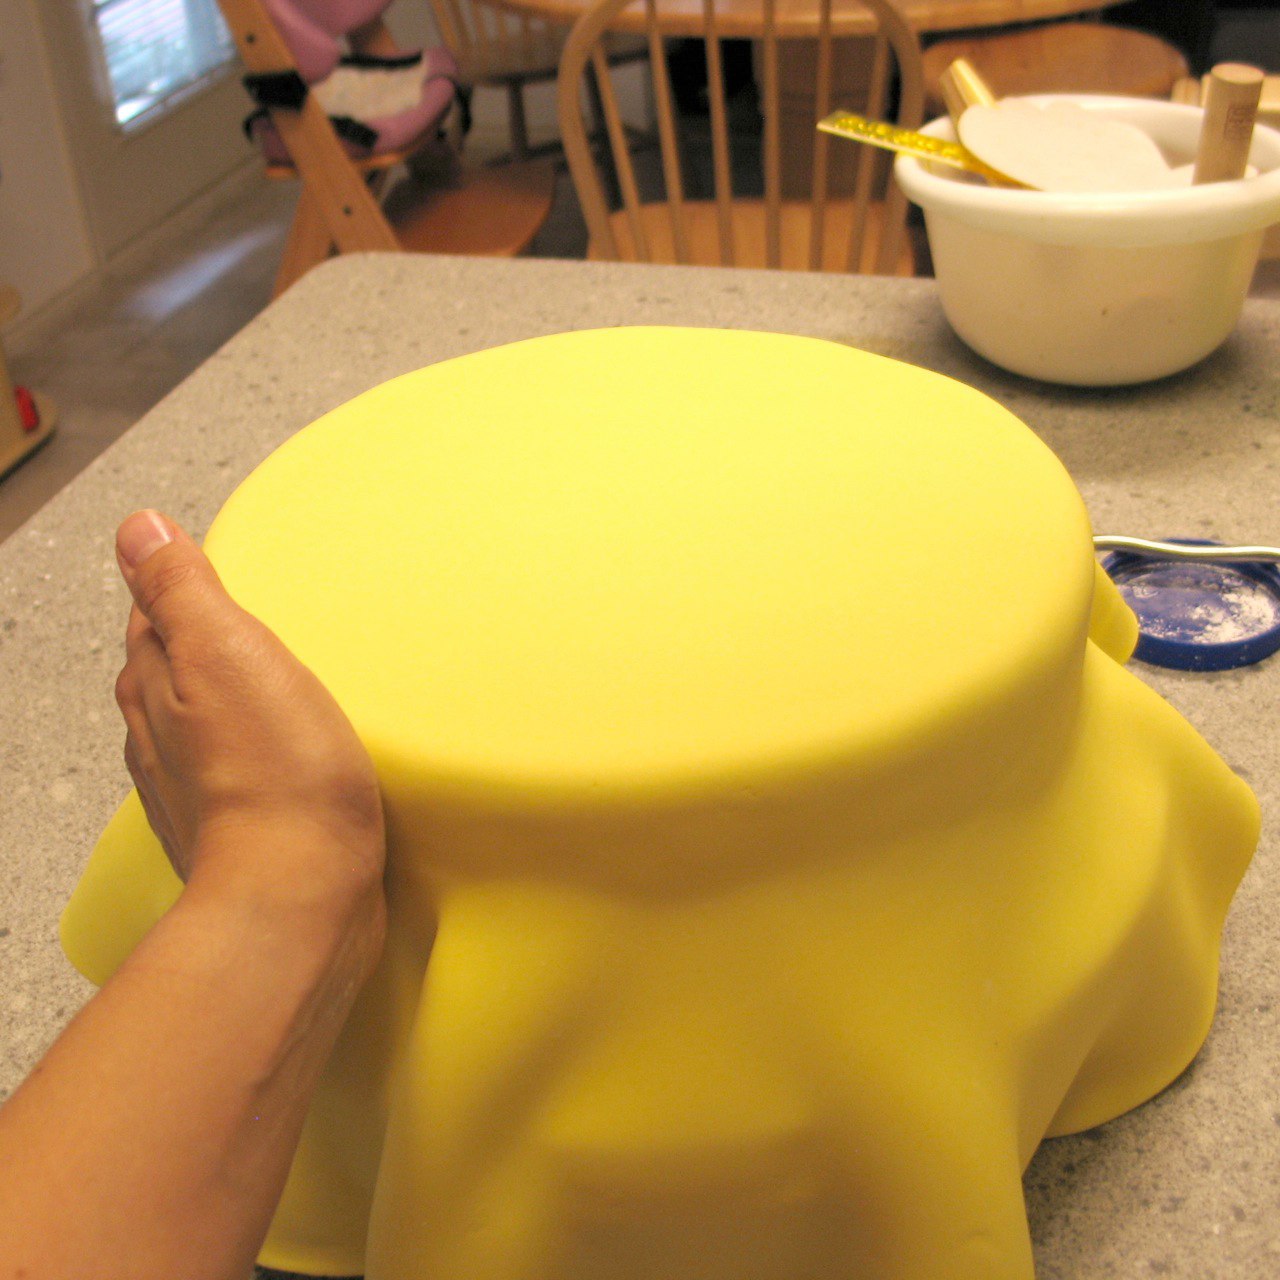 Подготовка торта к обтяжке мастикой